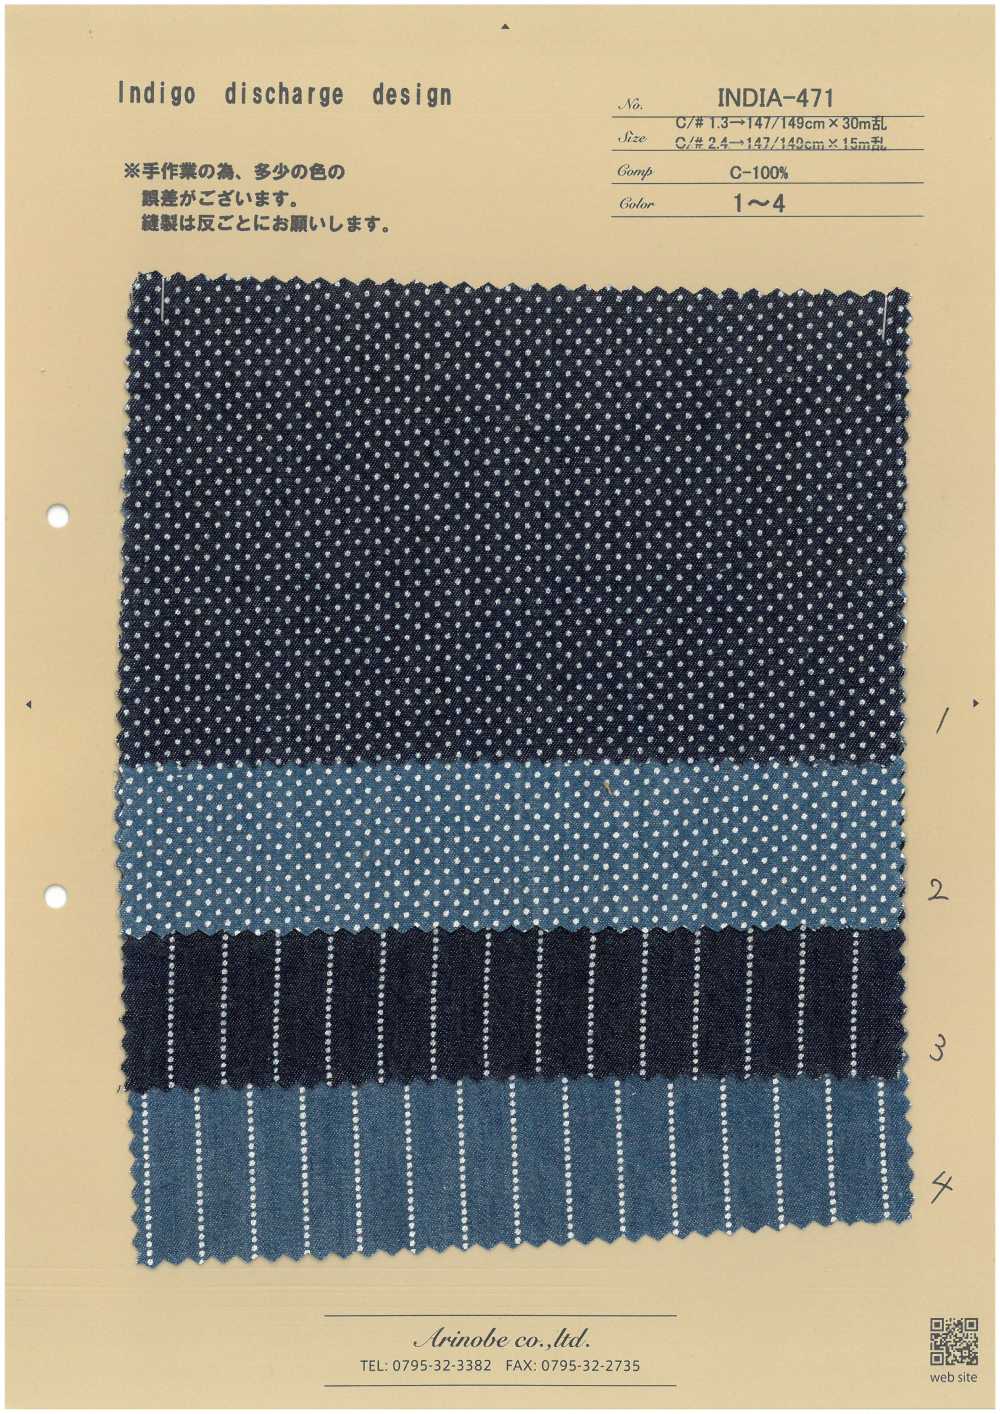 INDIA-471 Diseño De Descarga índigo[Fabrica Textil] ARINOBE CO., LTD.